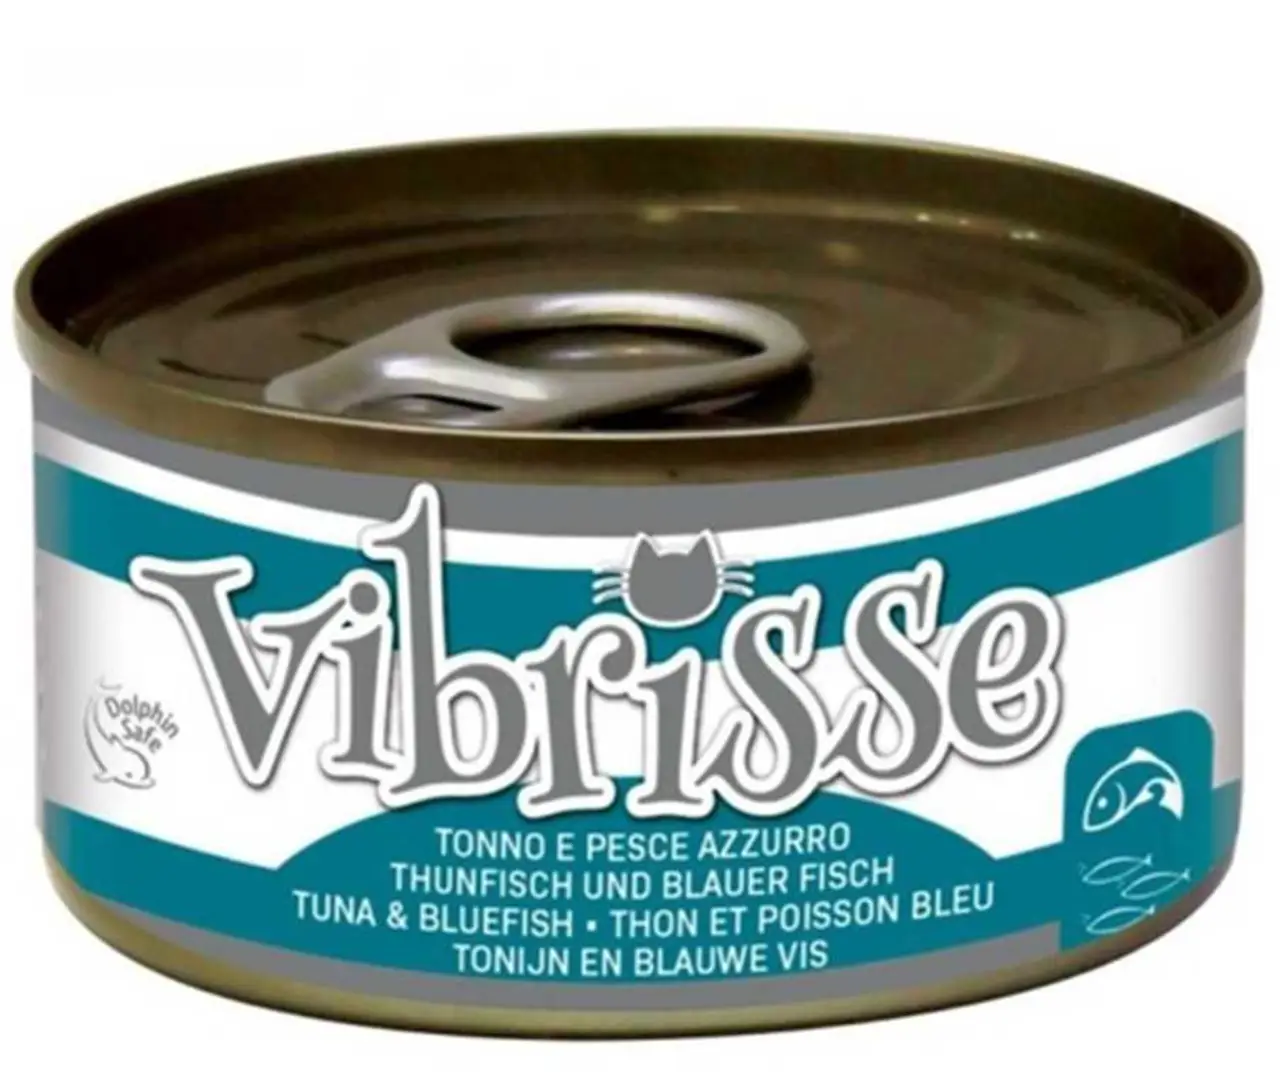 Vibrisse консервы для кошек 70г (тунец/корюшка)1